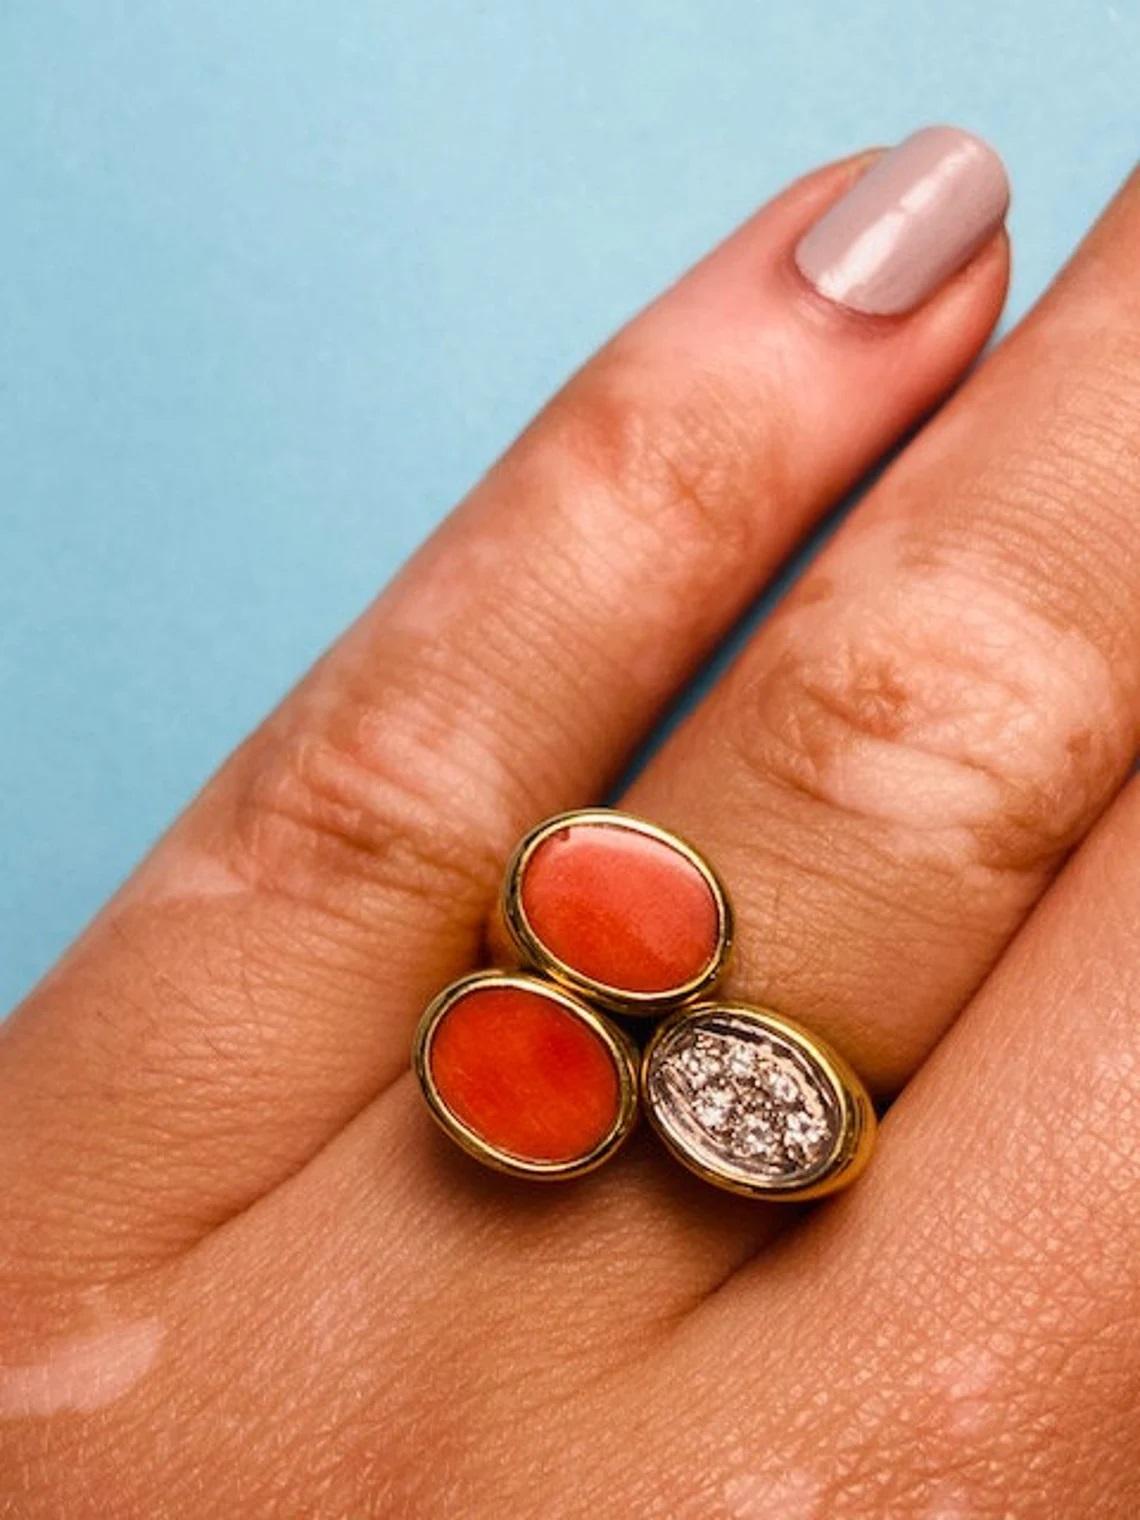 Einzigartiger Vintage-Cluster-Ring aus 14 Karat Gold Koralle und Diamant mit weißen Diamanten, Vintage

Dieser einzigartige Cluster-Ring im Vintage-Stil ist der perfekte Statement-Ring, der jedem Look einen Farbakzent verleiht. Es hat schöne